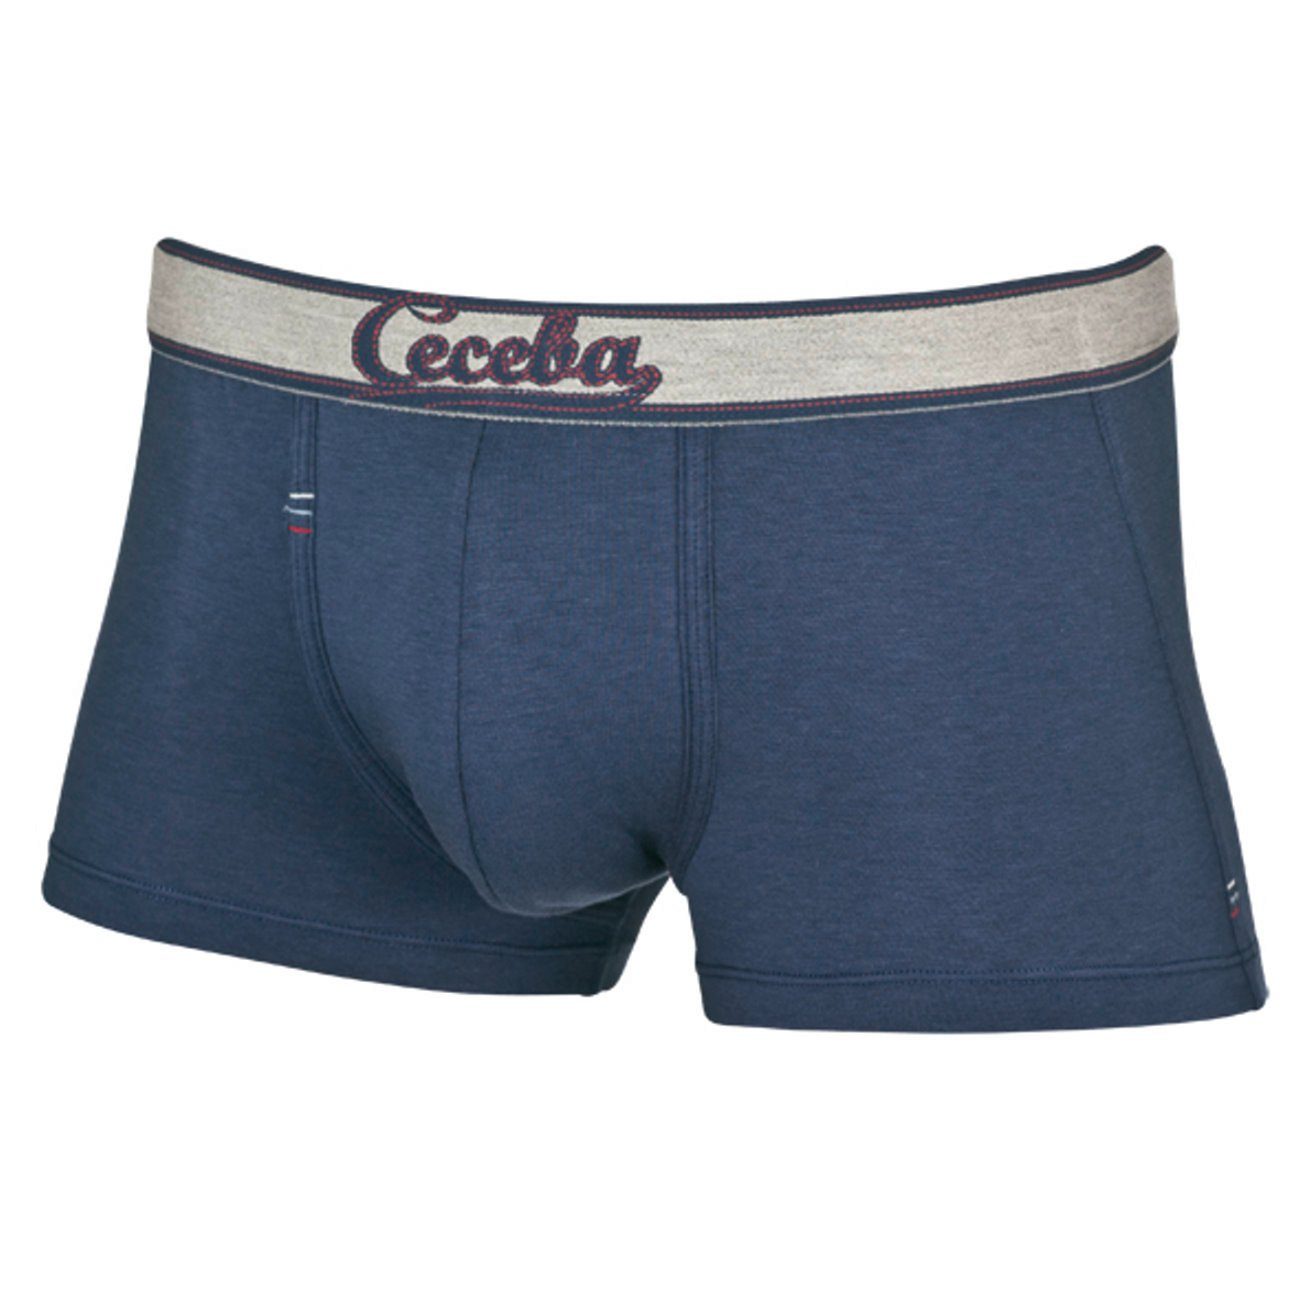 CECEBA Unterhosen für Herren online kaufen | OTTO